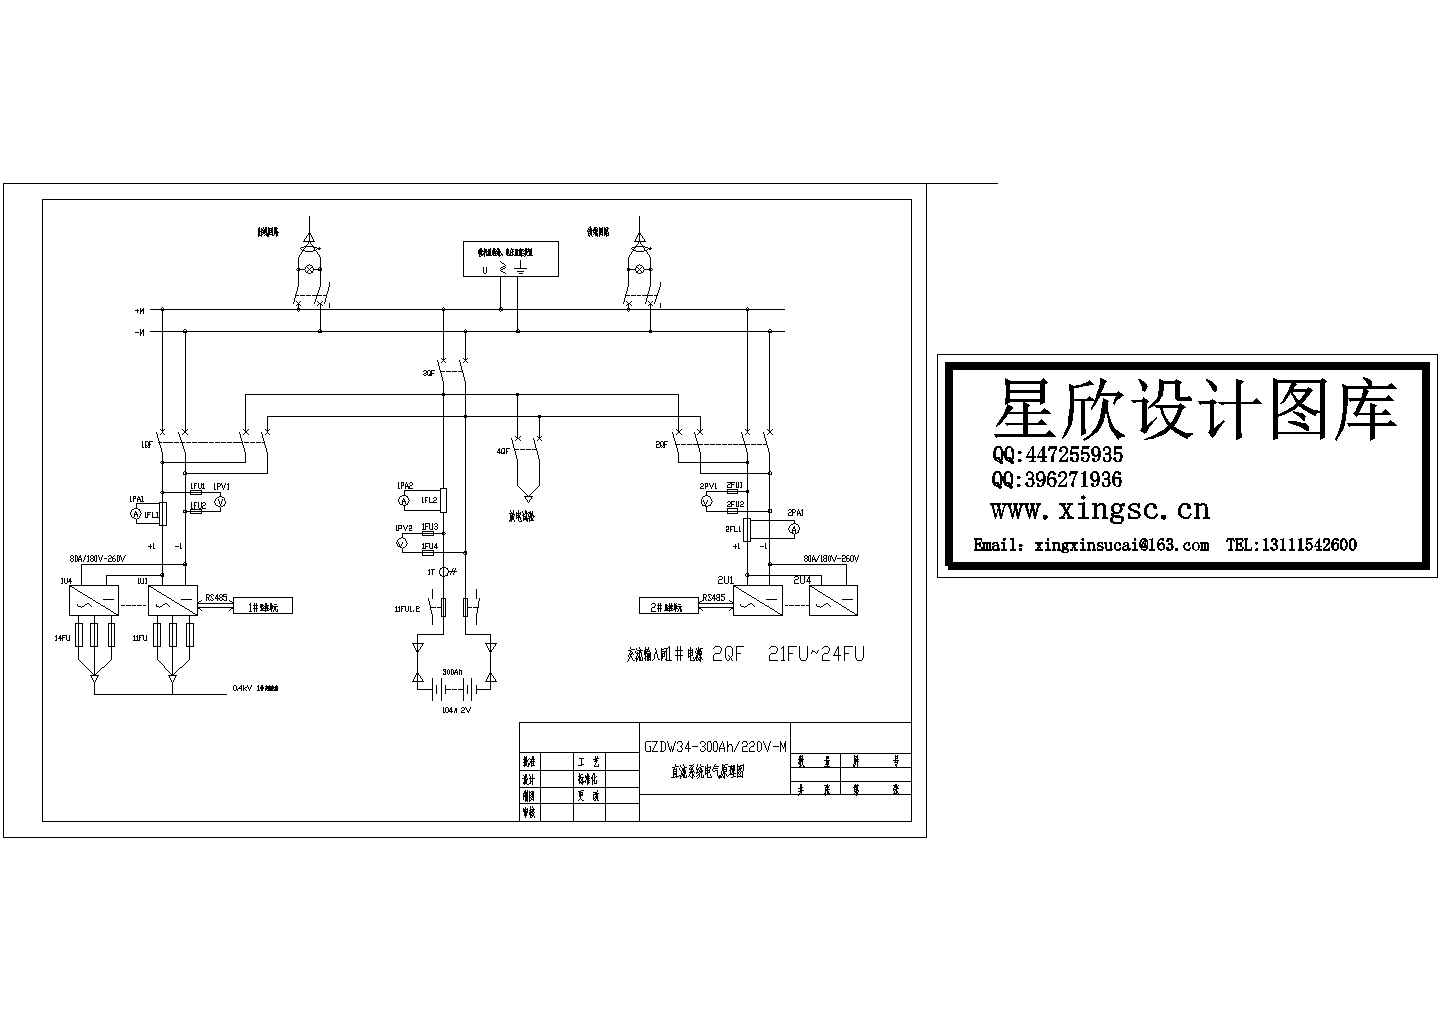 GZDW34-300Ah-220V-M直流系统电气原理图cad图纸